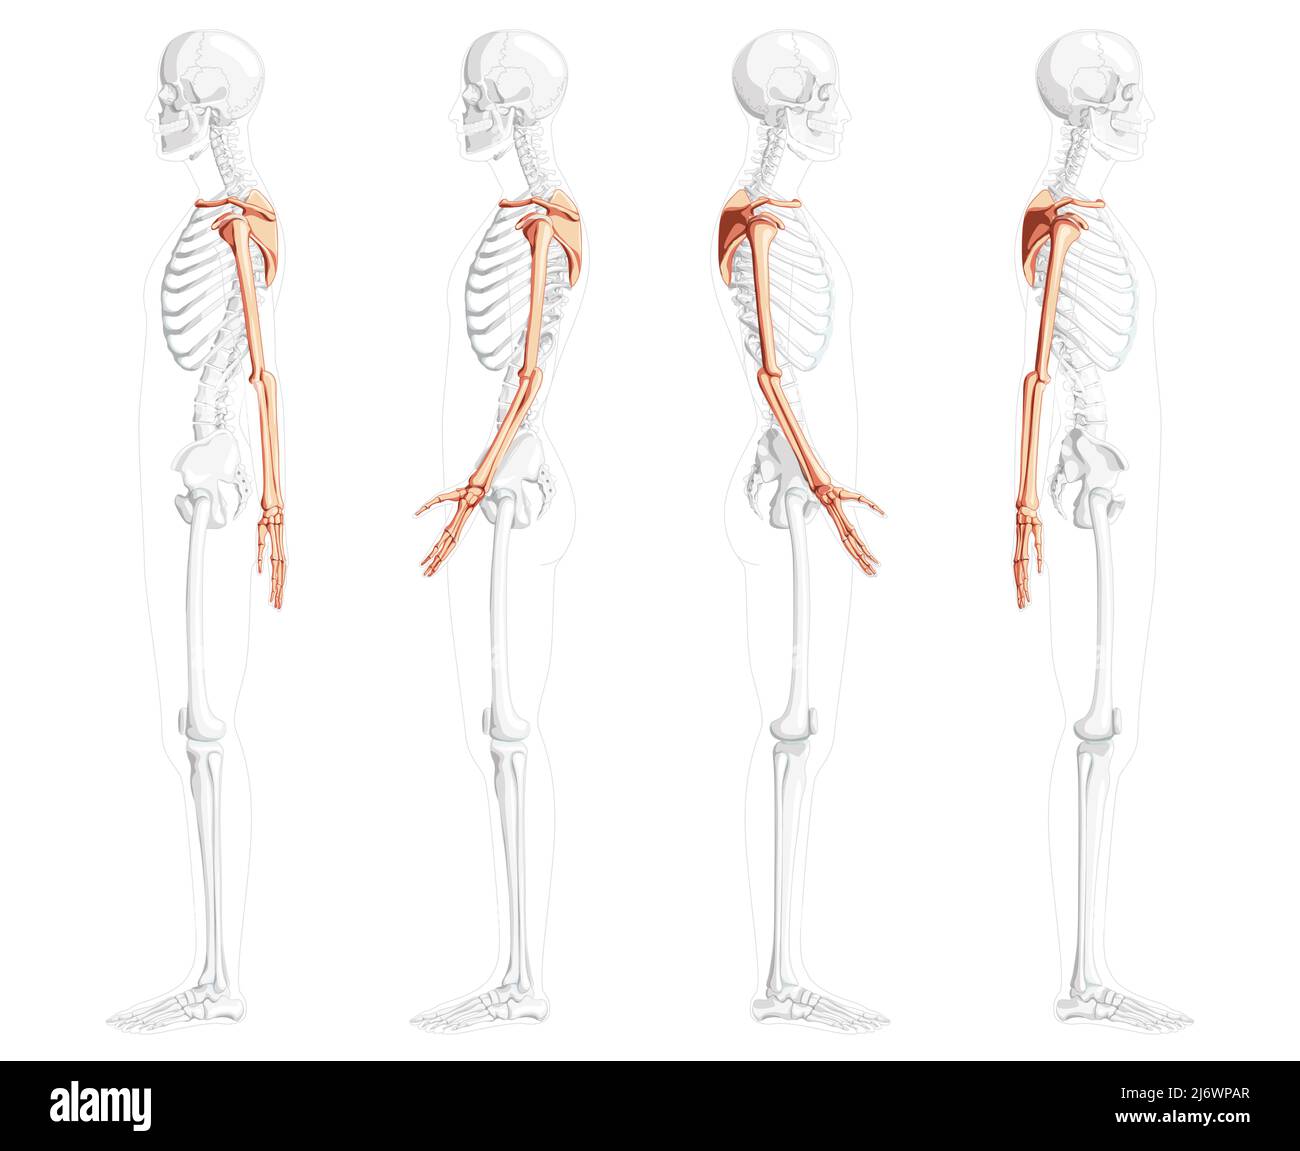 Squelette du membre supérieur bras avec ceinture d'épaule vue latérale humaine avec position des os partiellement transparente. Jeu de mains, clavicule, scapula, avant-bras réaliste plat illustration vectorielle de l'anatomie isolée Illustration de Vecteur